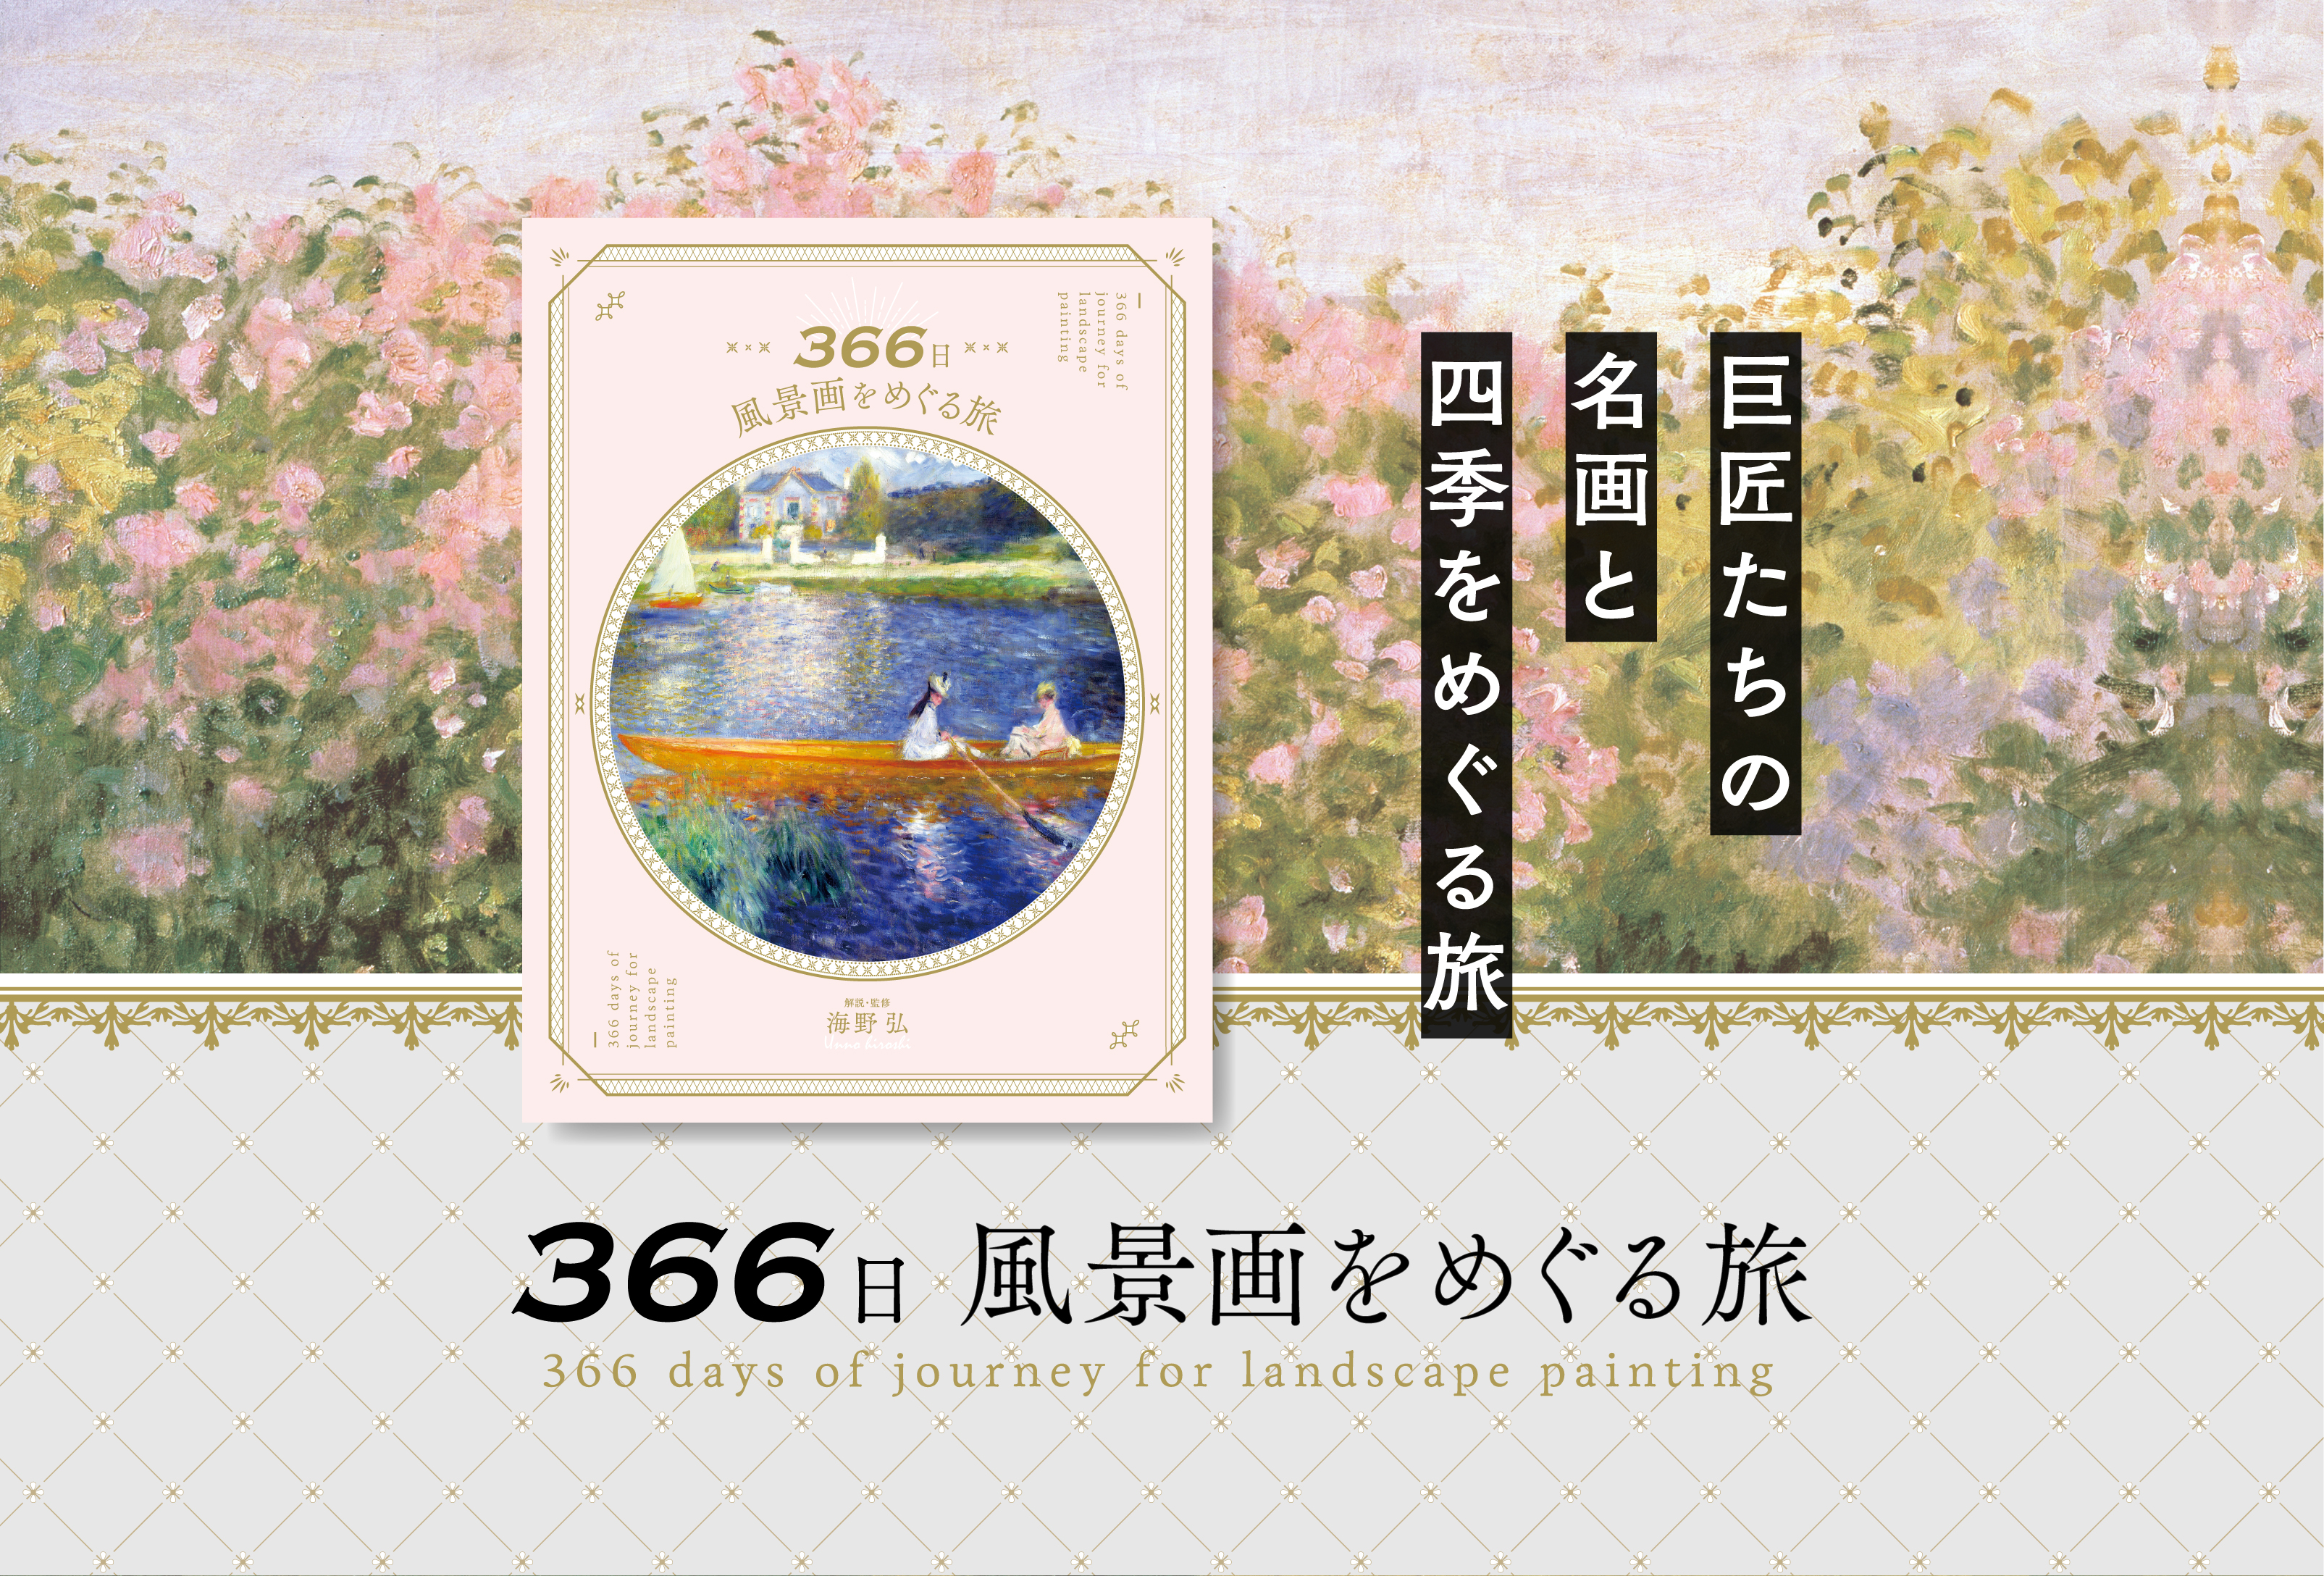 366日 風景画をめぐる旅